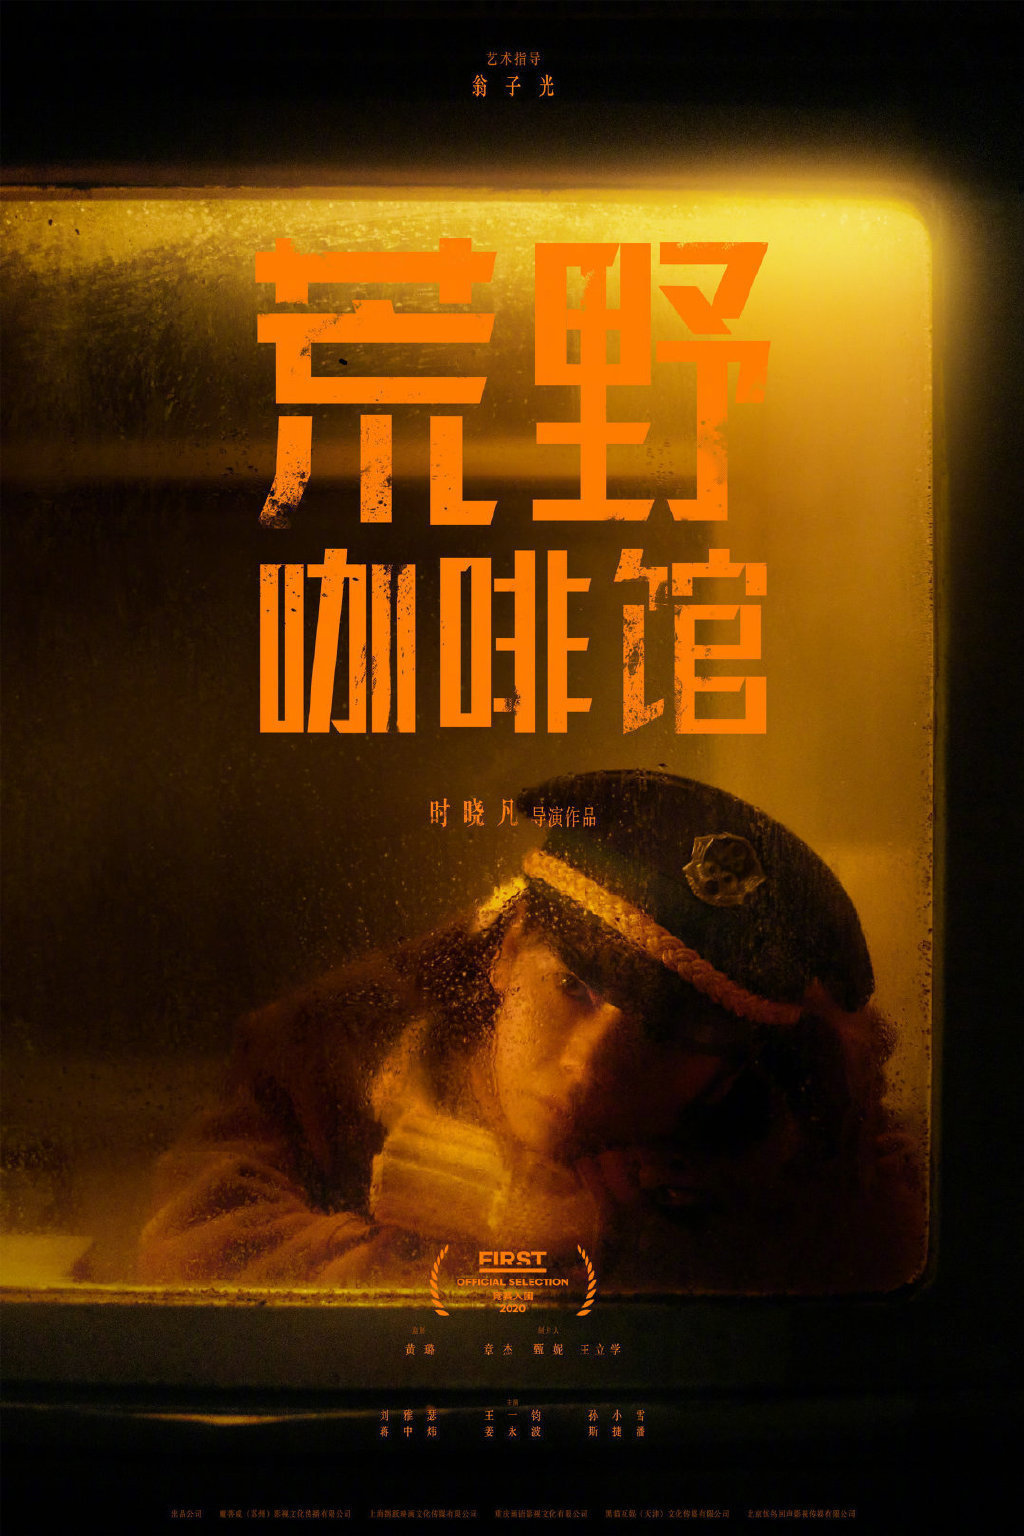 一组,中文,电影,海报设计,参考 . 一组中文电影海报设计参考